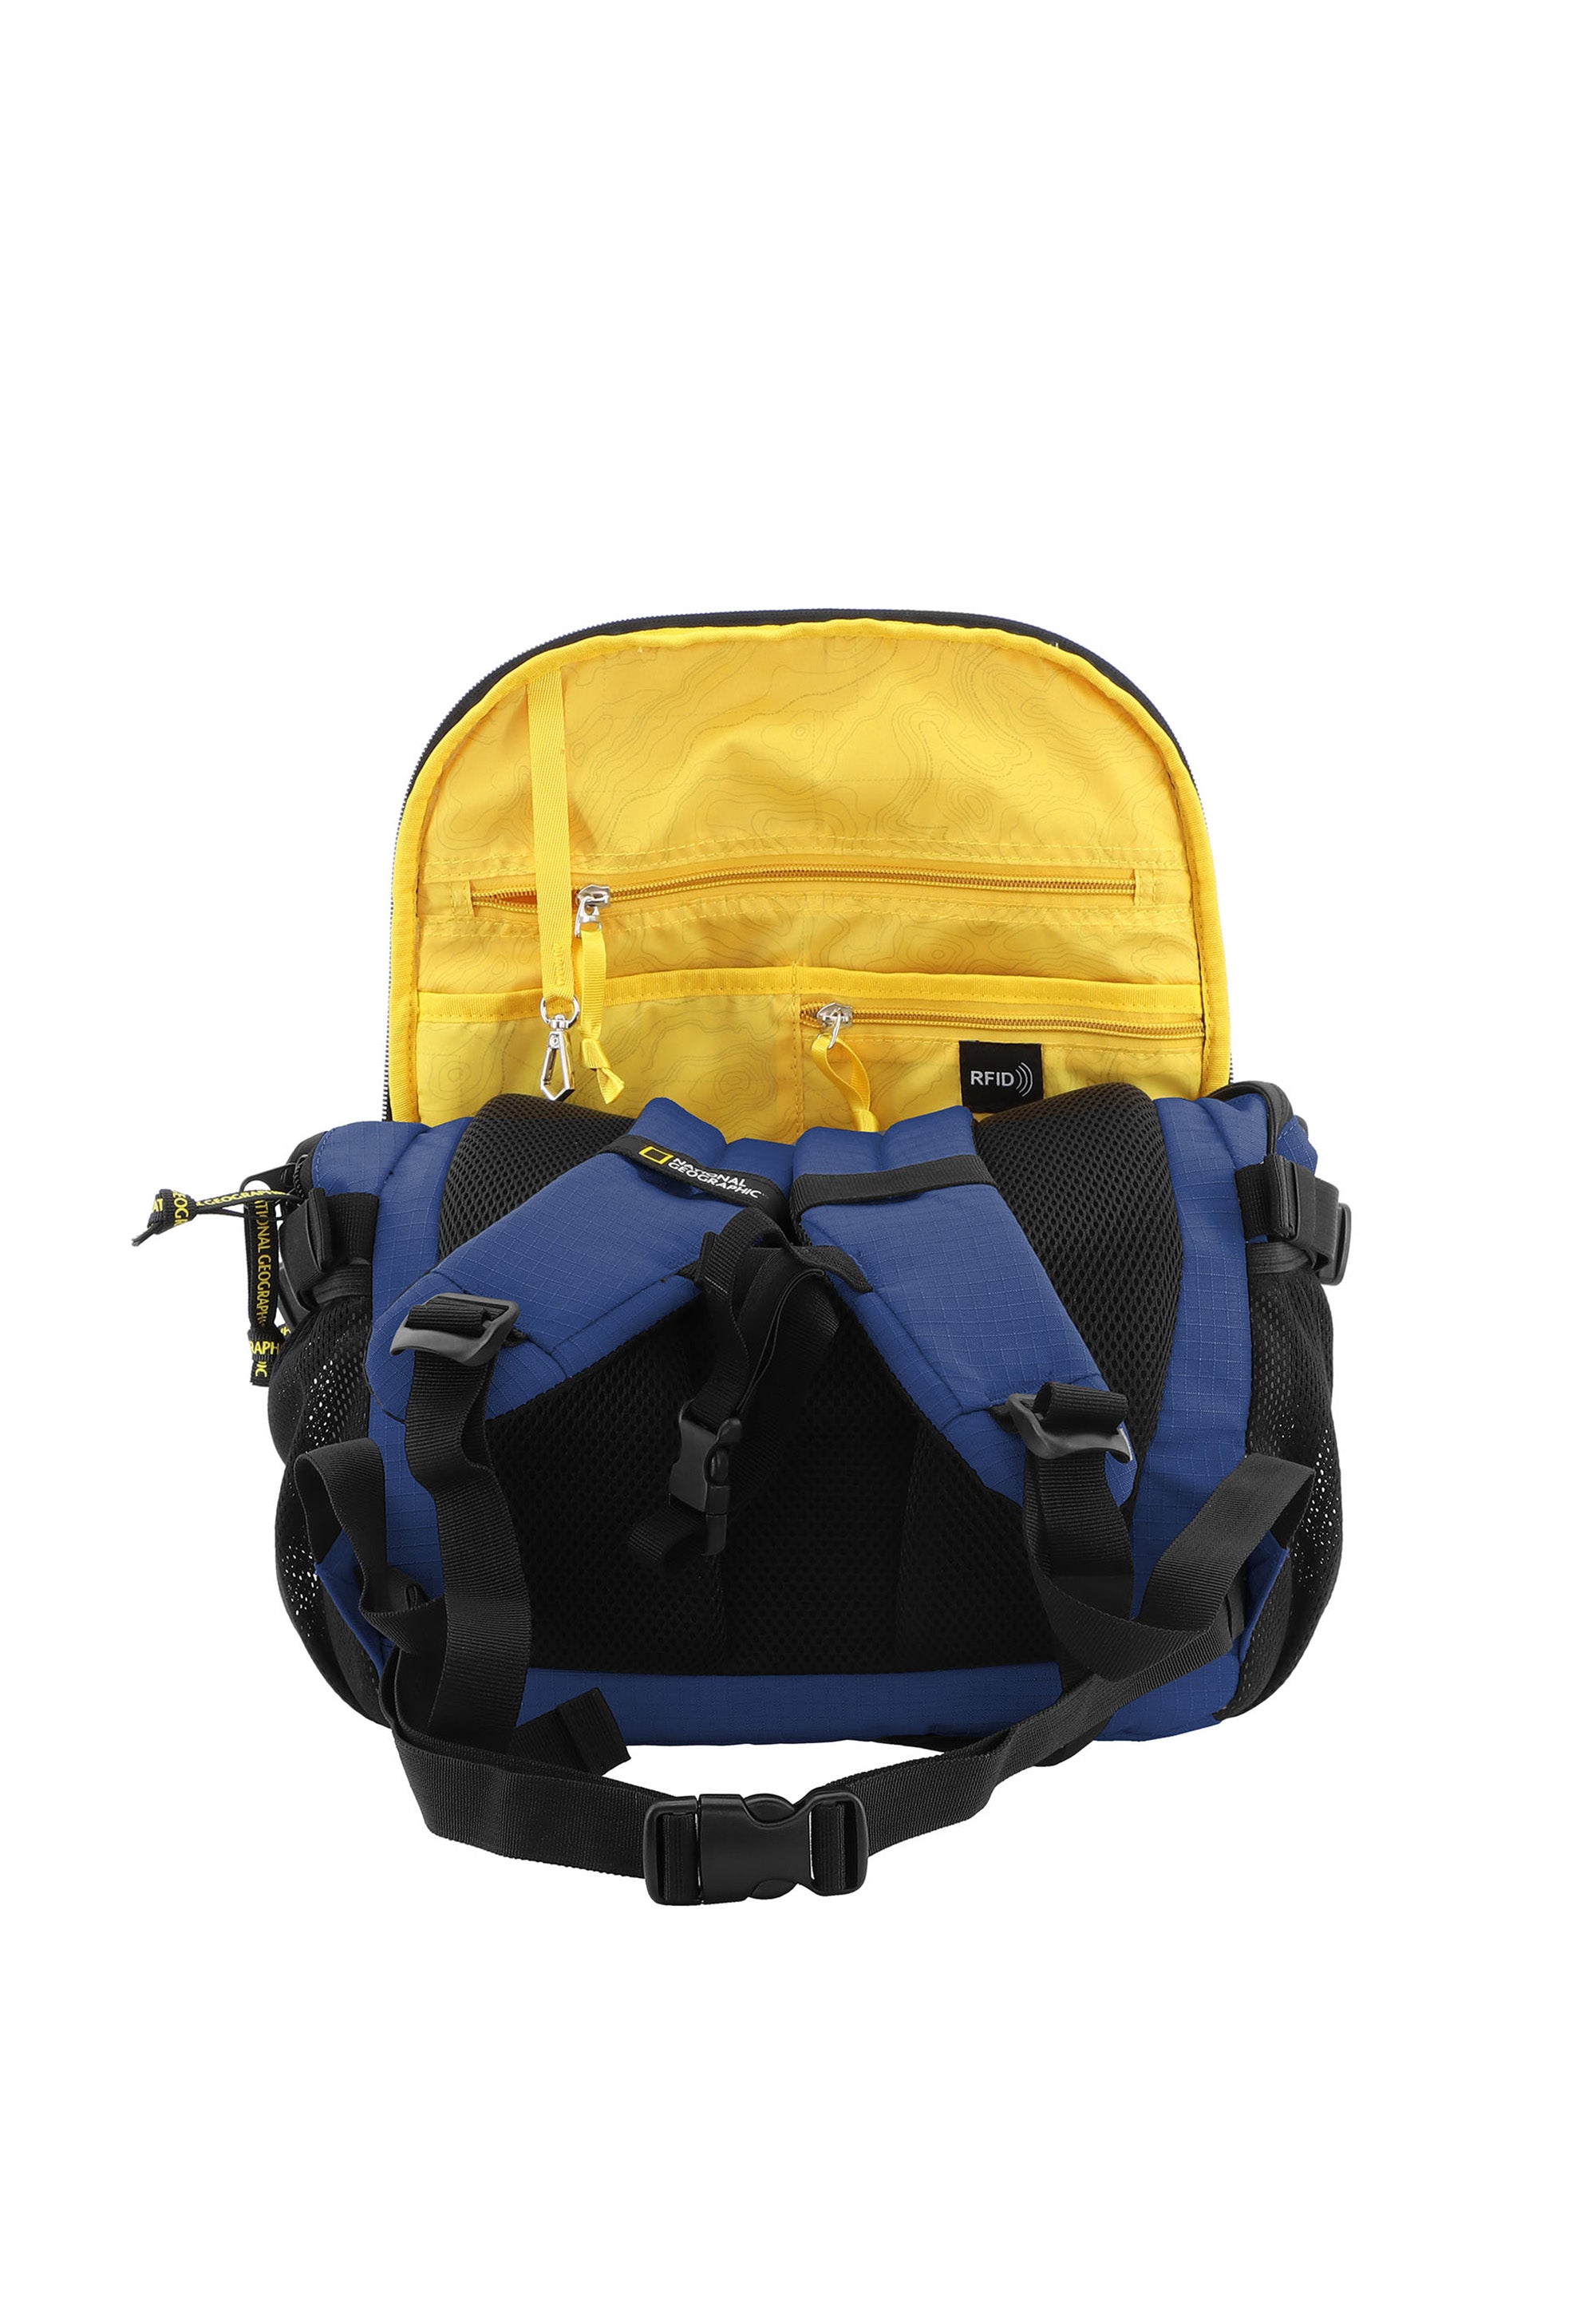 National Geographic - Explorer III | Rucksack aus recycelten PET-Flaschen | Blau